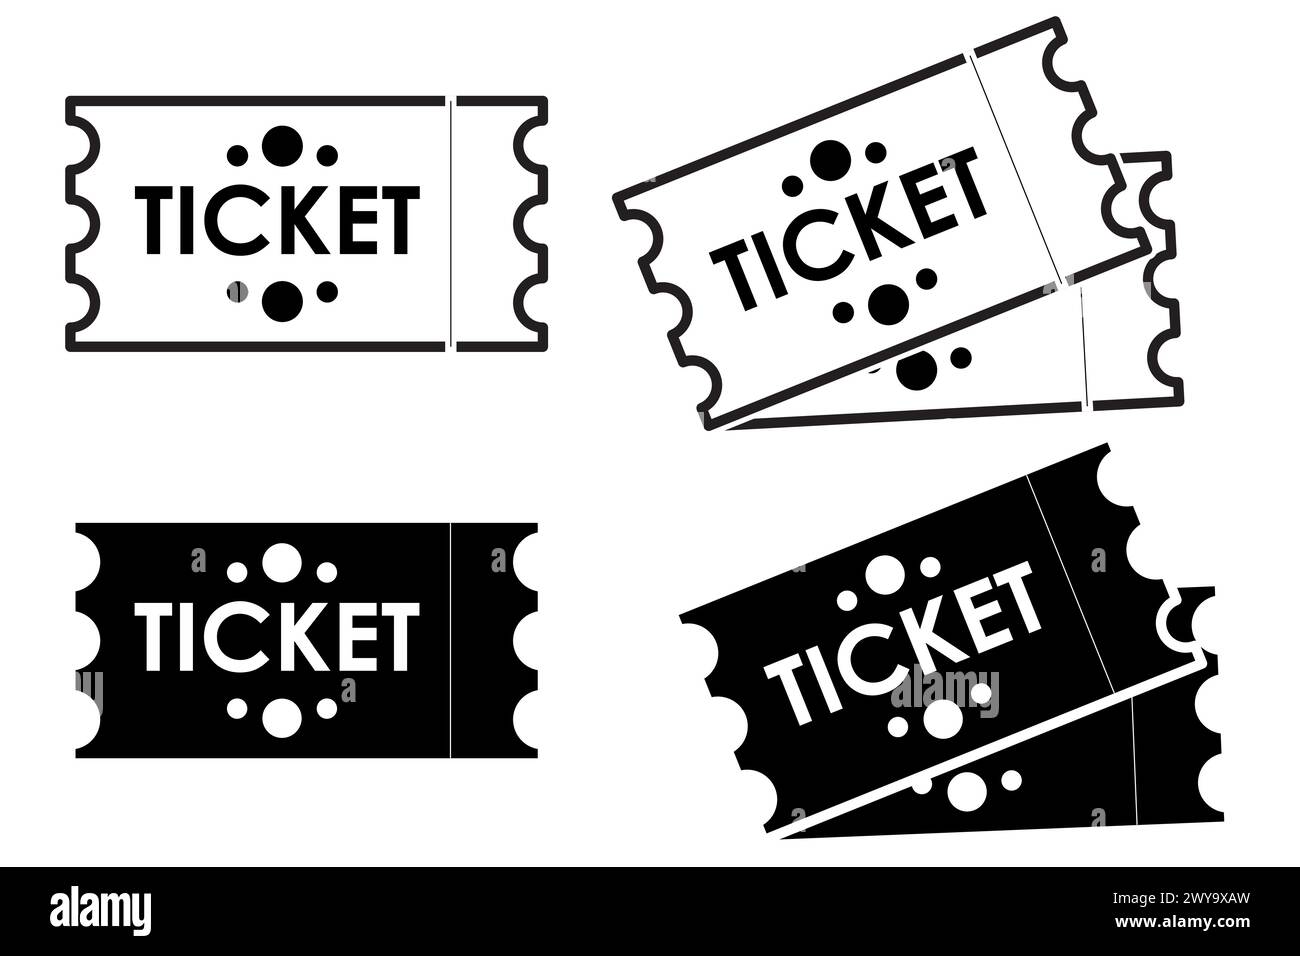 Ticketsymbole, Veranstaltungskarten schwarz-weiß Schwarzweiß Stock Vektor